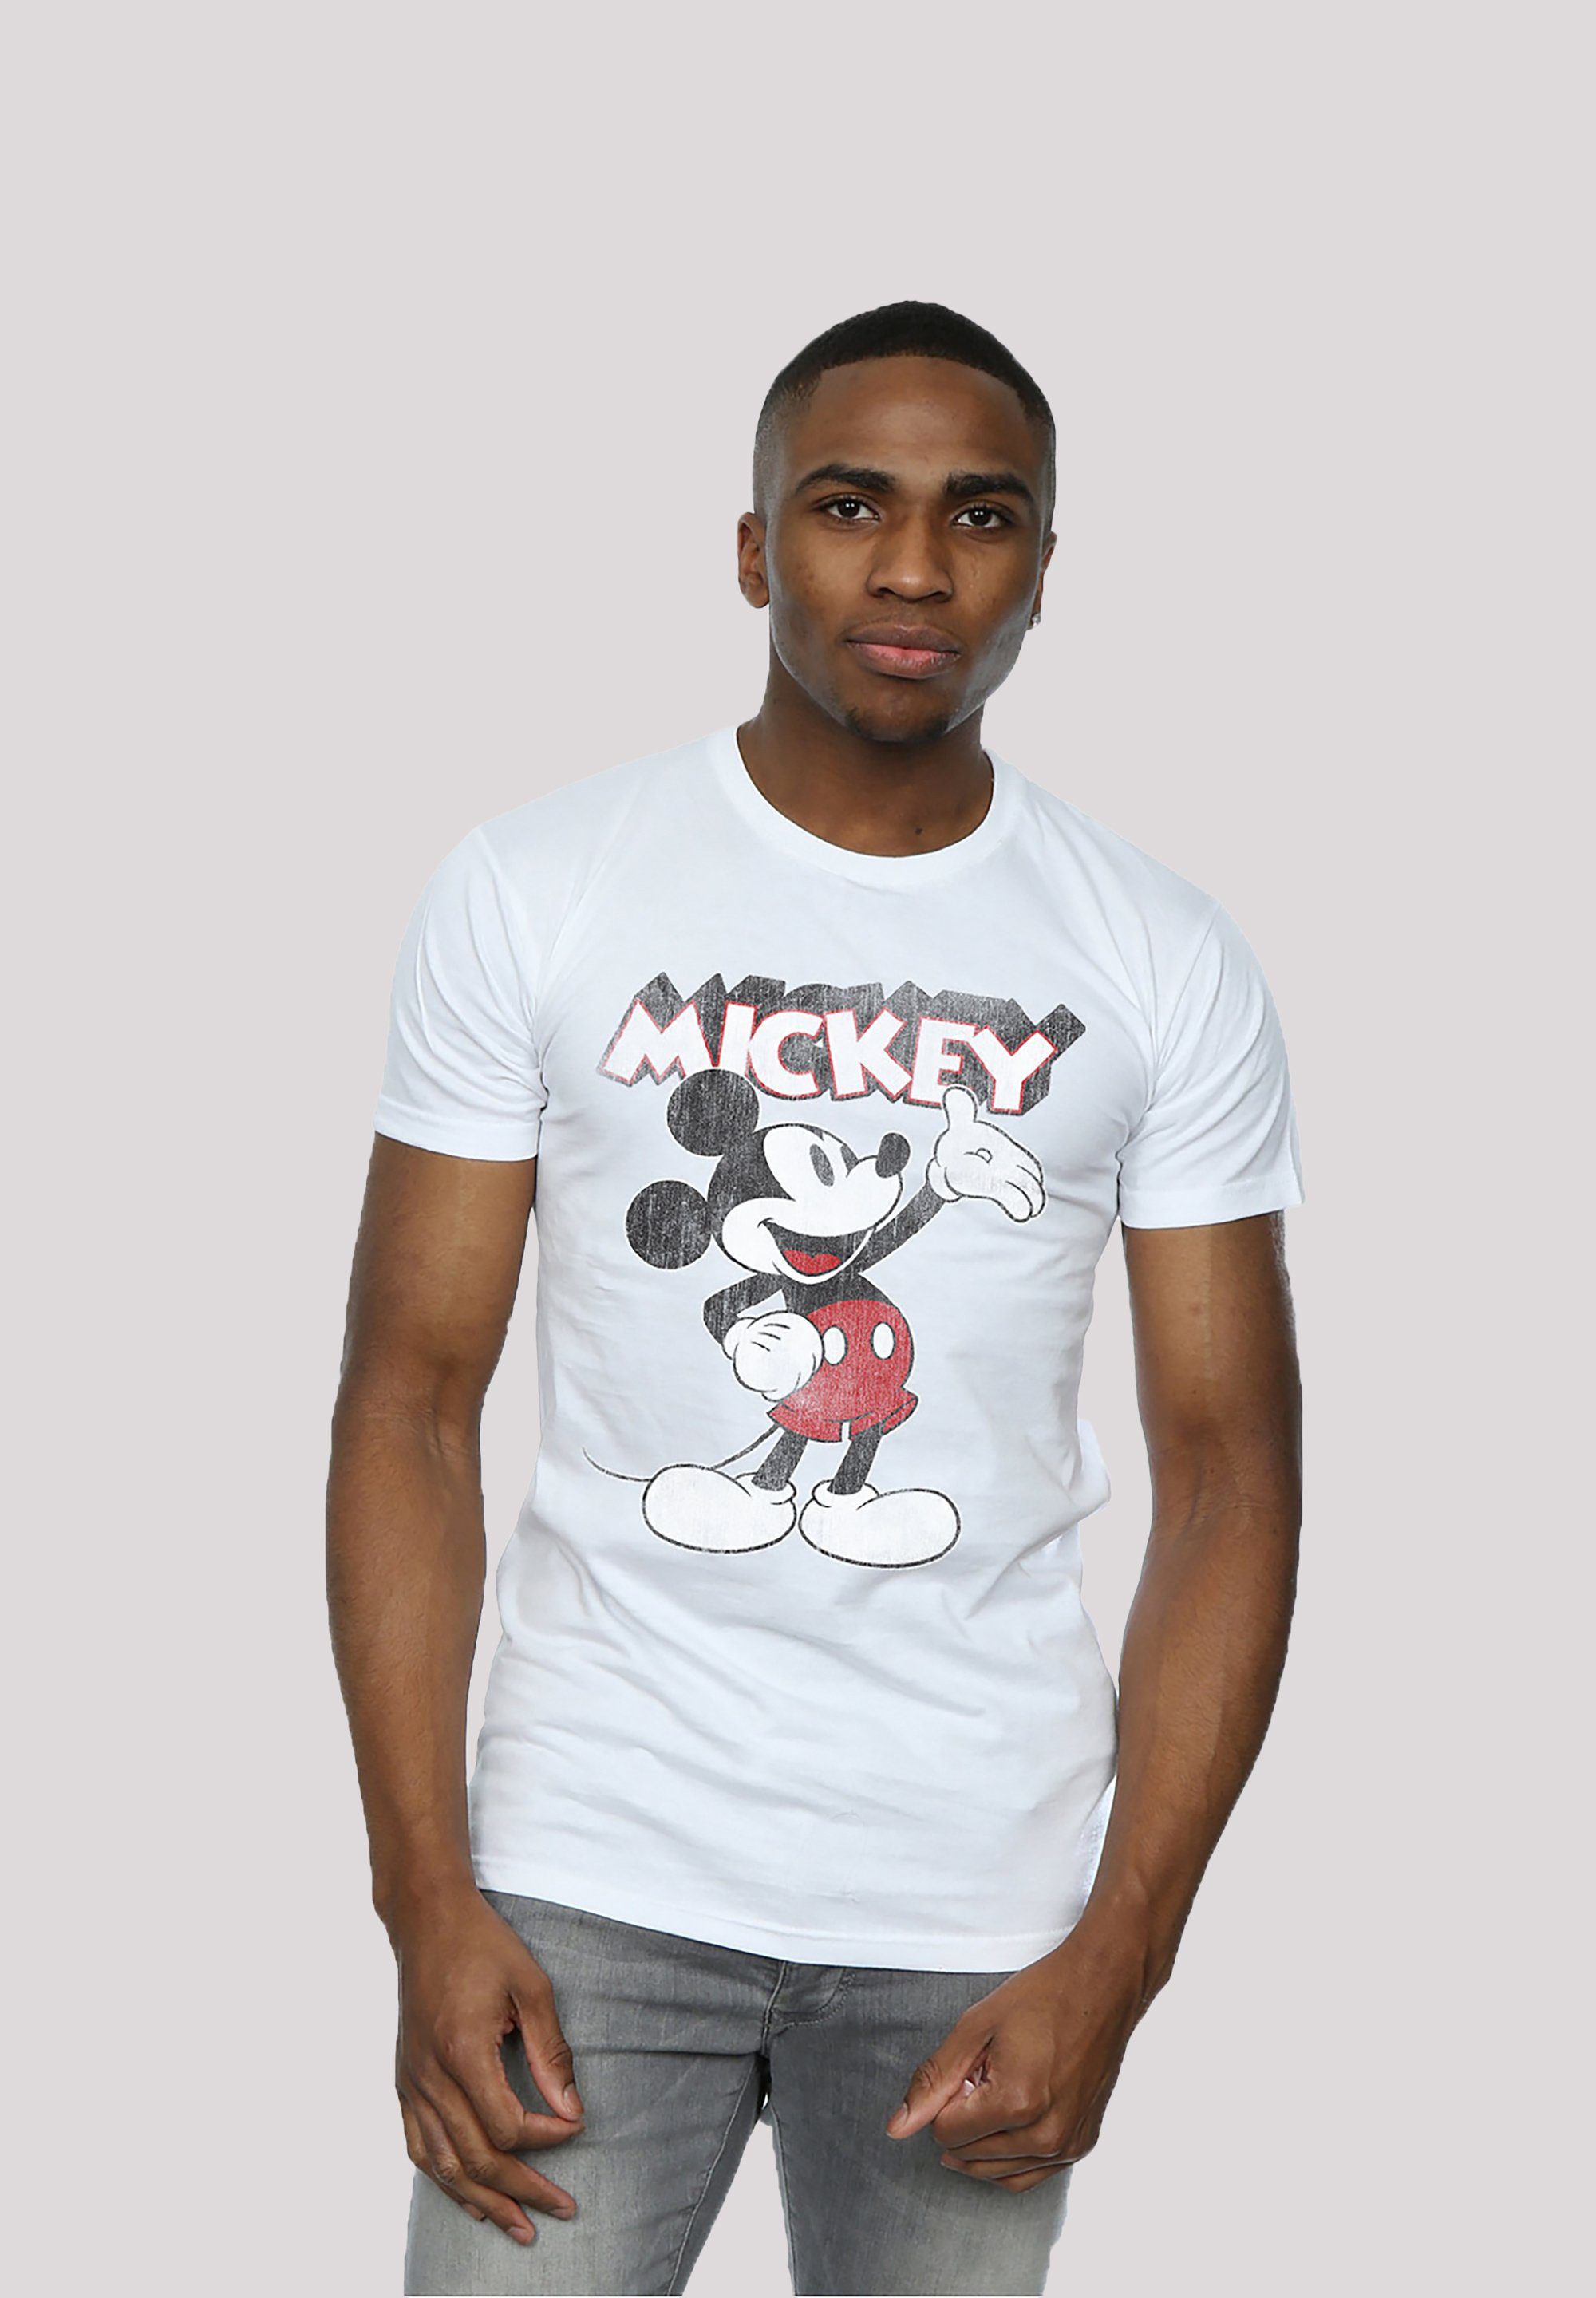 F4NT4STIC T-Shirt Disney Micky Maus hohem Sehr Presents weicher Tragekomfort Baumwollstoff Print, mit